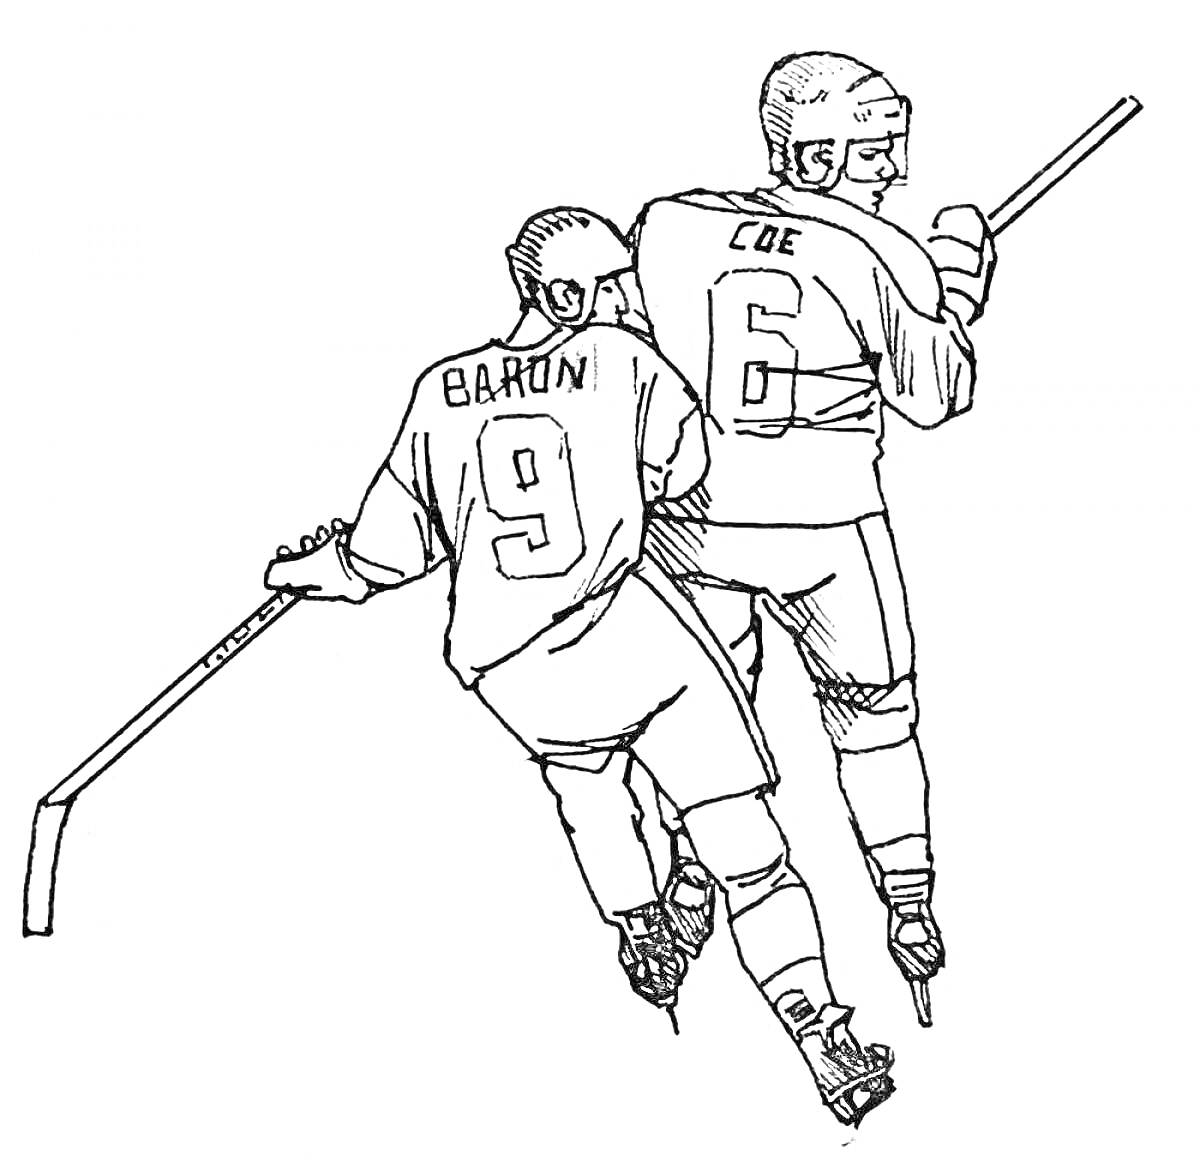 Двое хоккеистов в шлемах и форме с клюшками толкаются на льду